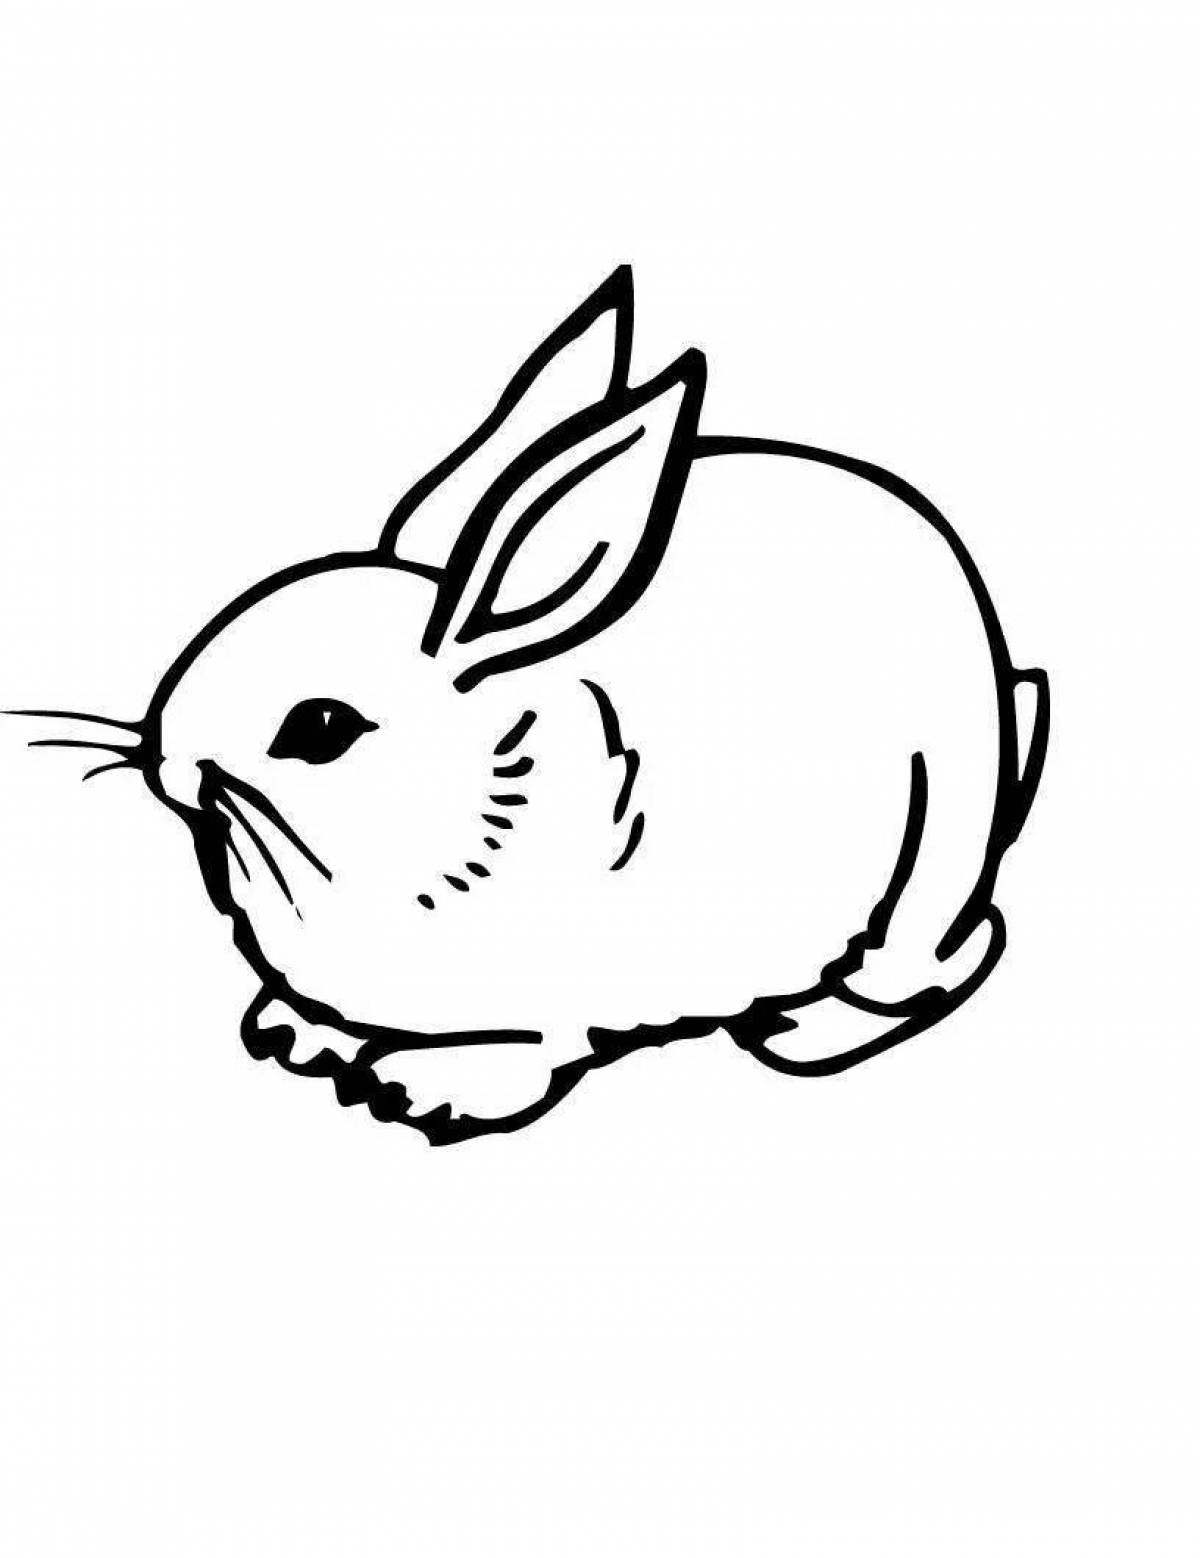 Рисунок заяц для детей раскраска 57 фото